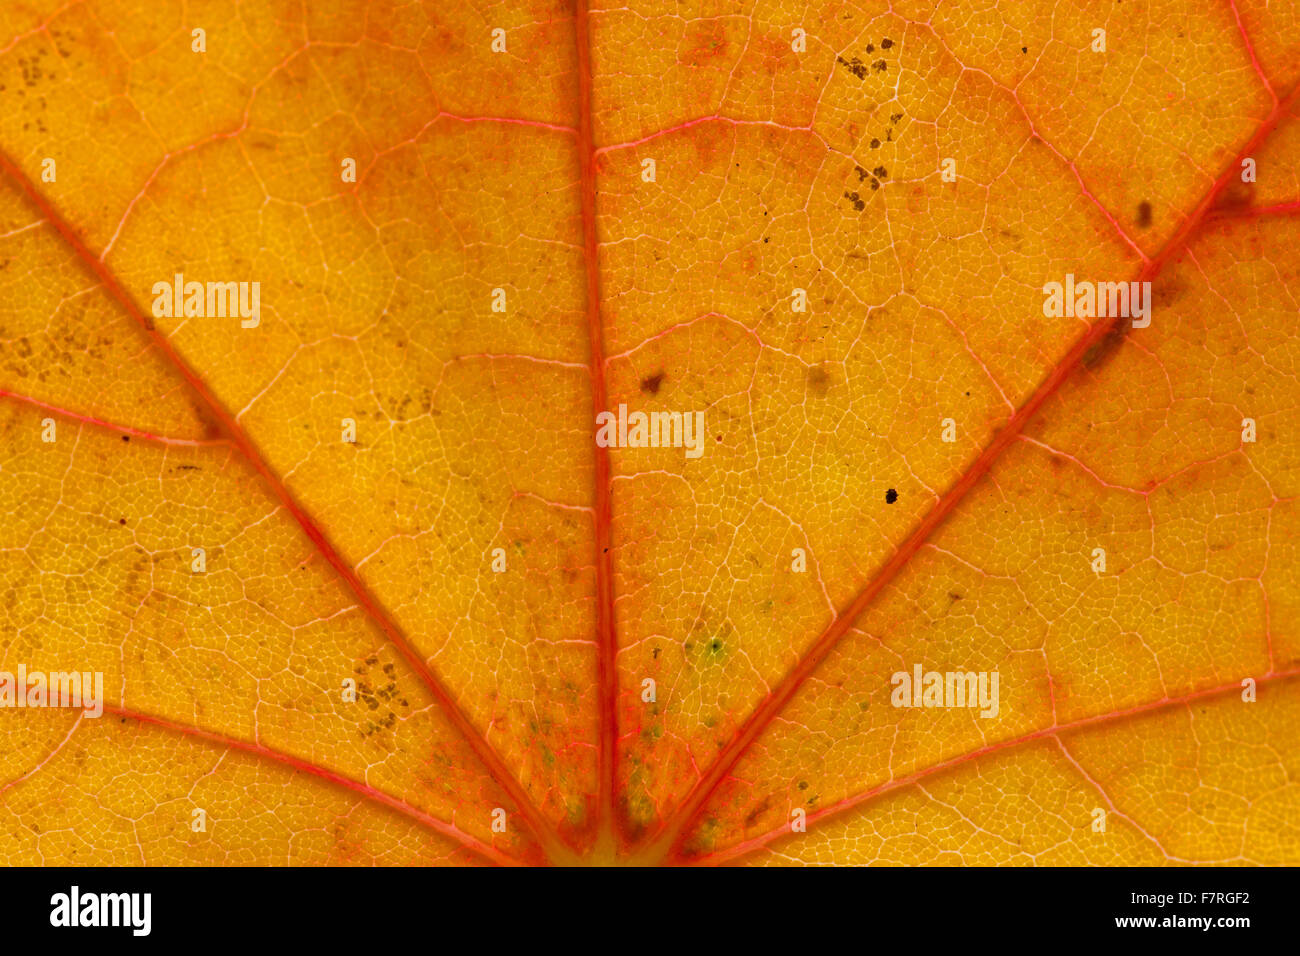 Spitz-Ahorn (Acer Platanoides) Großaufnahme des Blattes in orange Herbstfärbung zeigt Venen Stockfoto